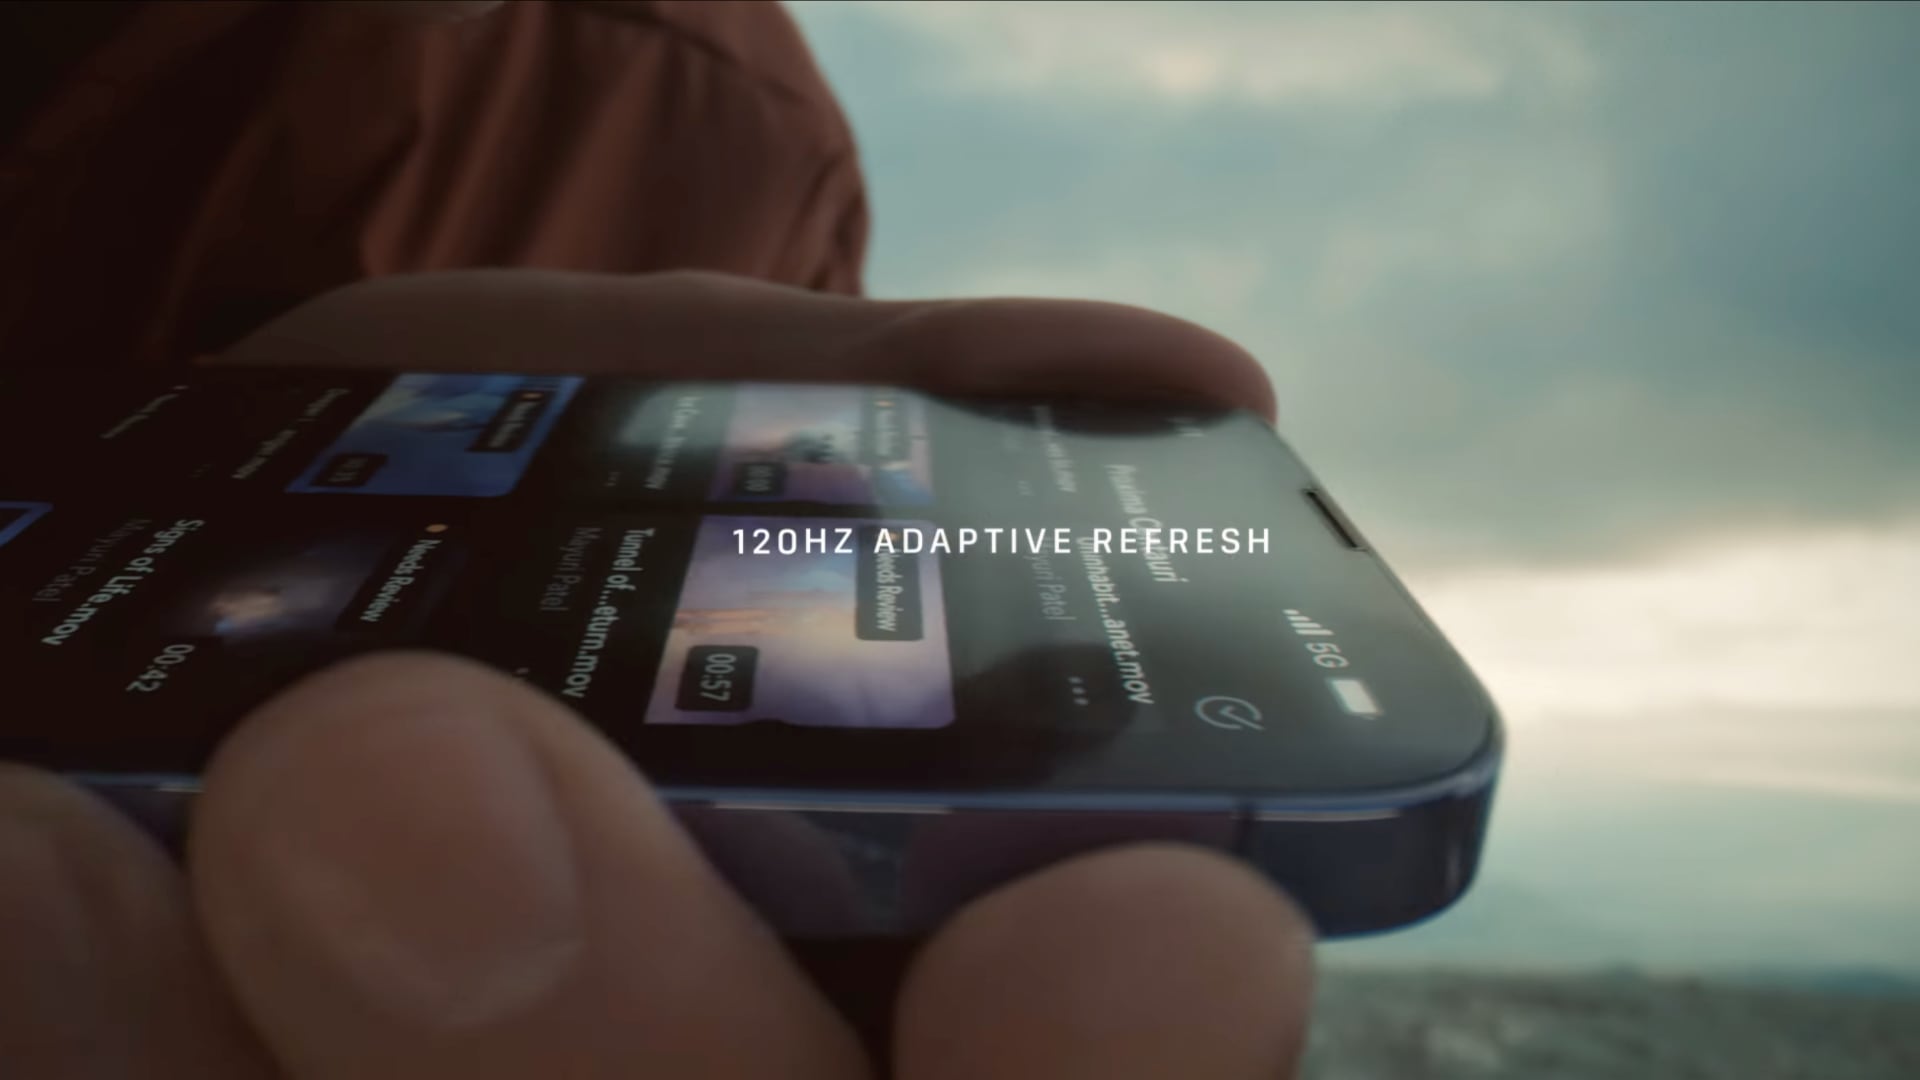 Image de la vidéo YouTube d'Apple montrant la technologie ProMotion en action, avec une main tenant un iPhone 13 Pro et faisant défiler une liste et le titre "Taux de rafraîchissement adaptatif de 120 Hz" superposé sur le dessus